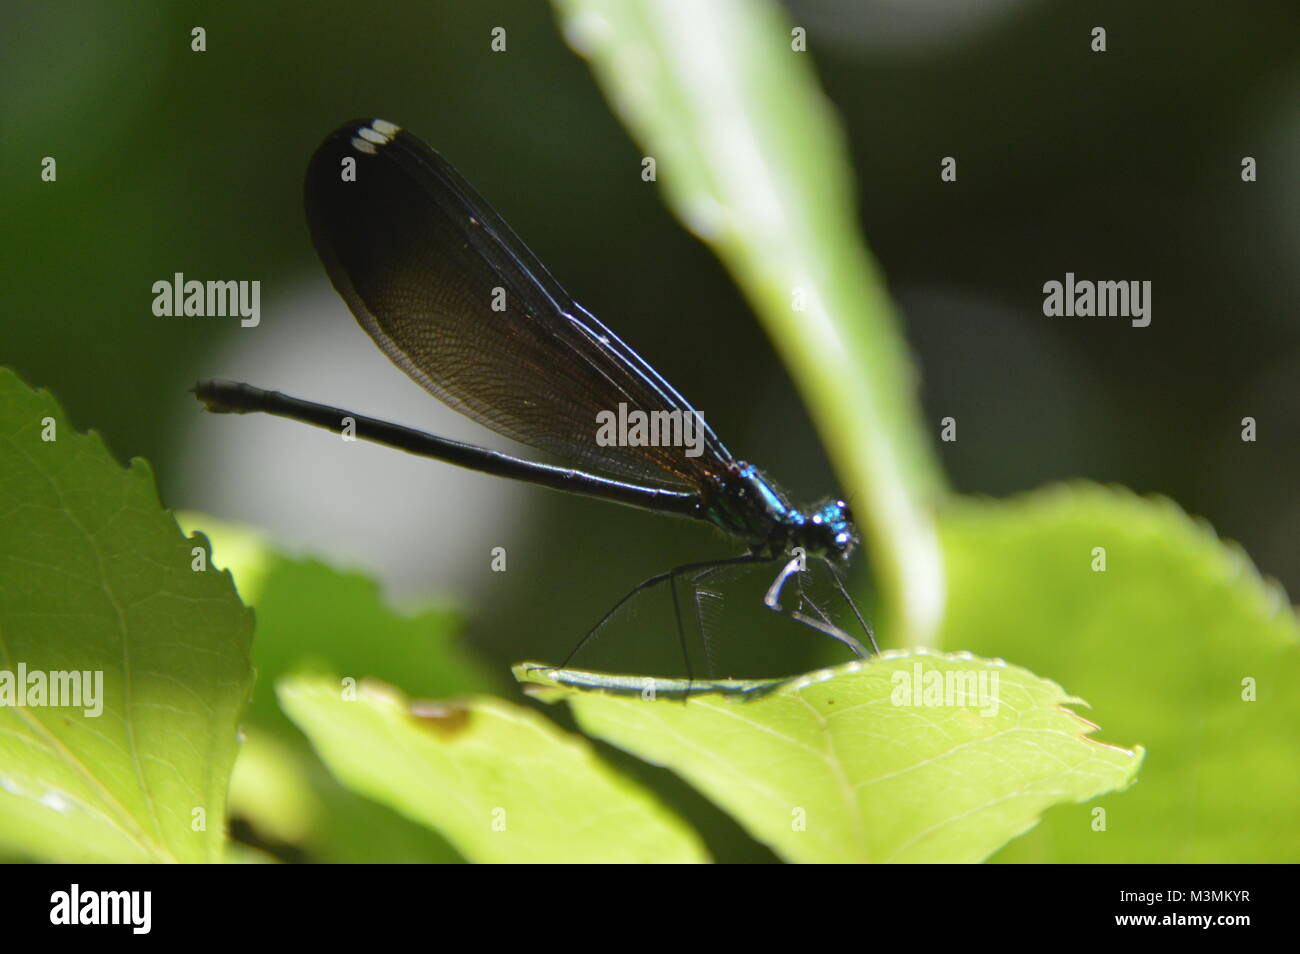 Un blu scuro mayfly seduto su una foglia verde con fogliame verde (sfocata) nello sfondo dell'immagine. Prese a Great Falls, VA Foto Stock